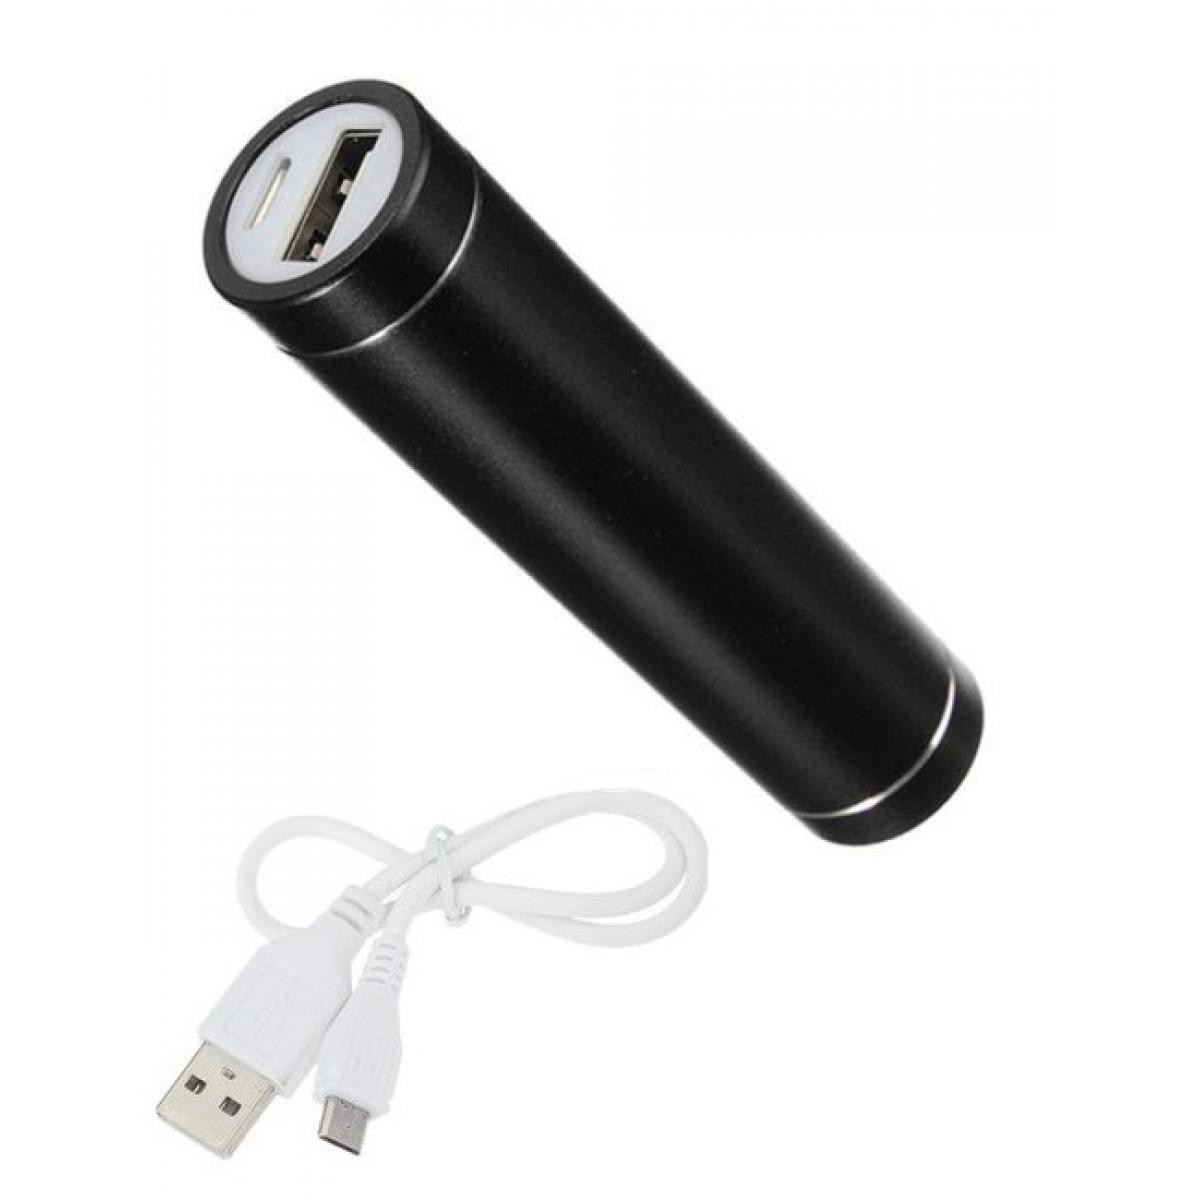 Shot - Batterie Chargeur Externe pour "Asus ZenFone 7 Pro" Power Bank 2600mAh avec Cable USB/Mirco USB Secours Telephone (NOIR) - Chargeur secteur téléphone